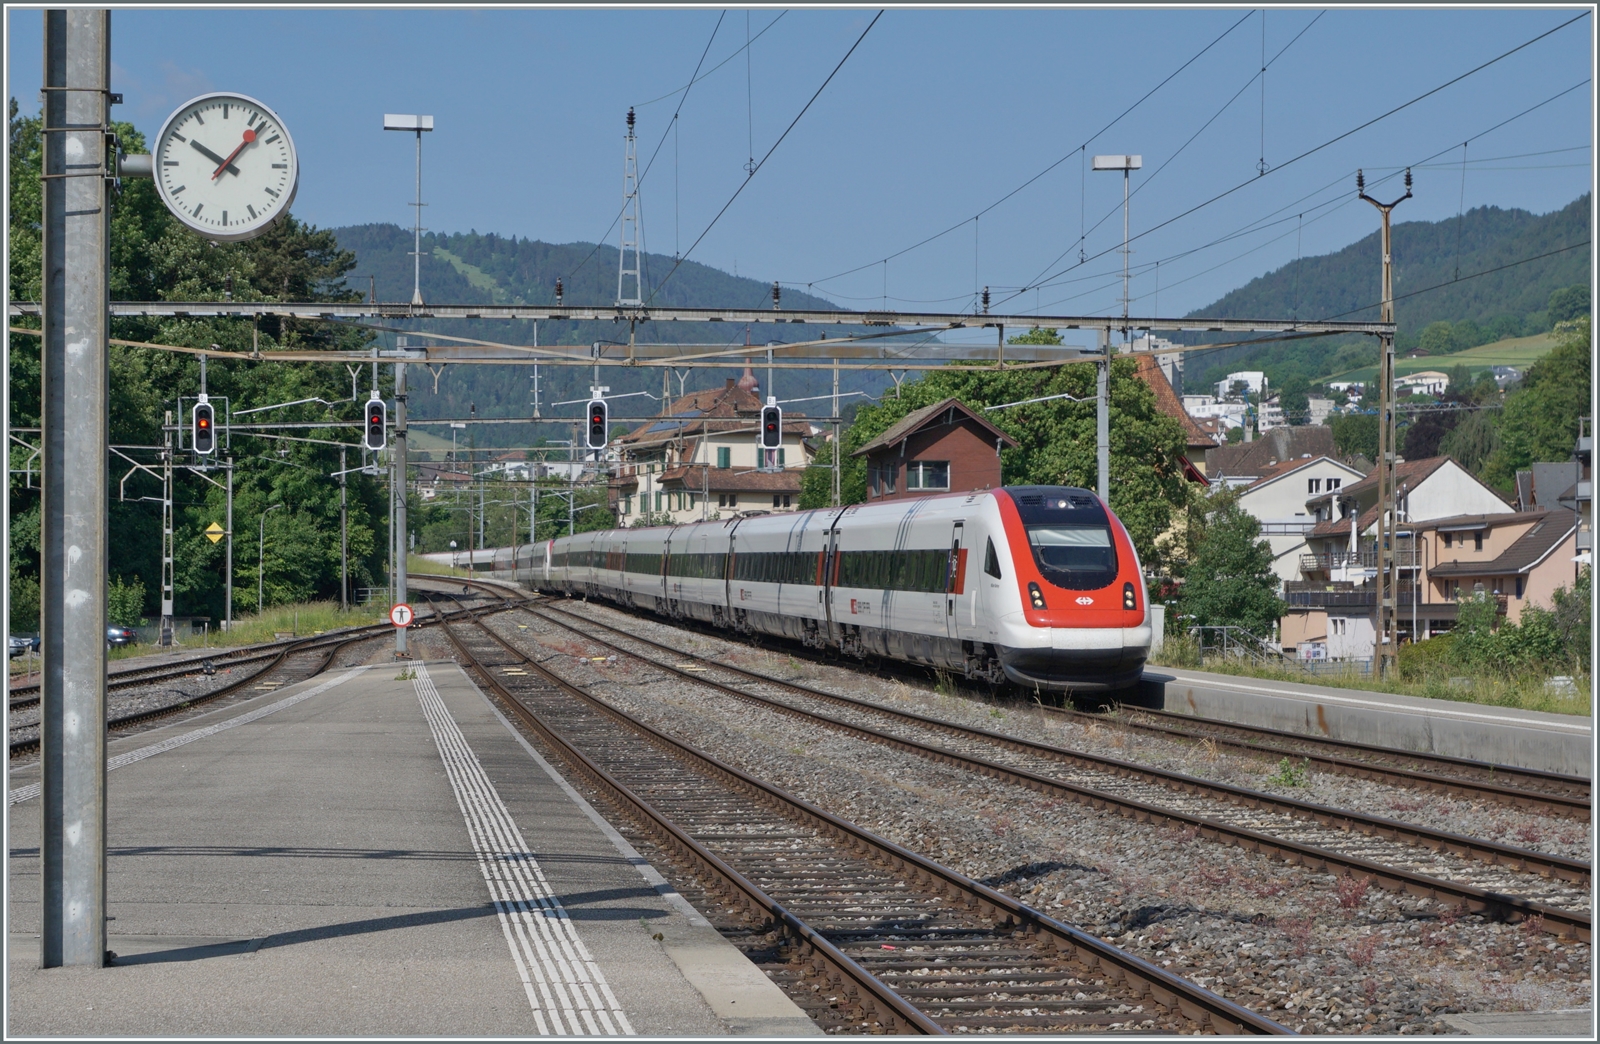 Die SBB ICN 500 041 William Barbey und  ICN 500 039 Auguste & Jaques Piccard erreichen als IC51 1615 von Biel/Bienne nach Basel SBB den Bahnhof von Moutier. ICN in Doppeltraktion sind auf dieser Strecke eher selten zu sehen.

5. Juni 2023